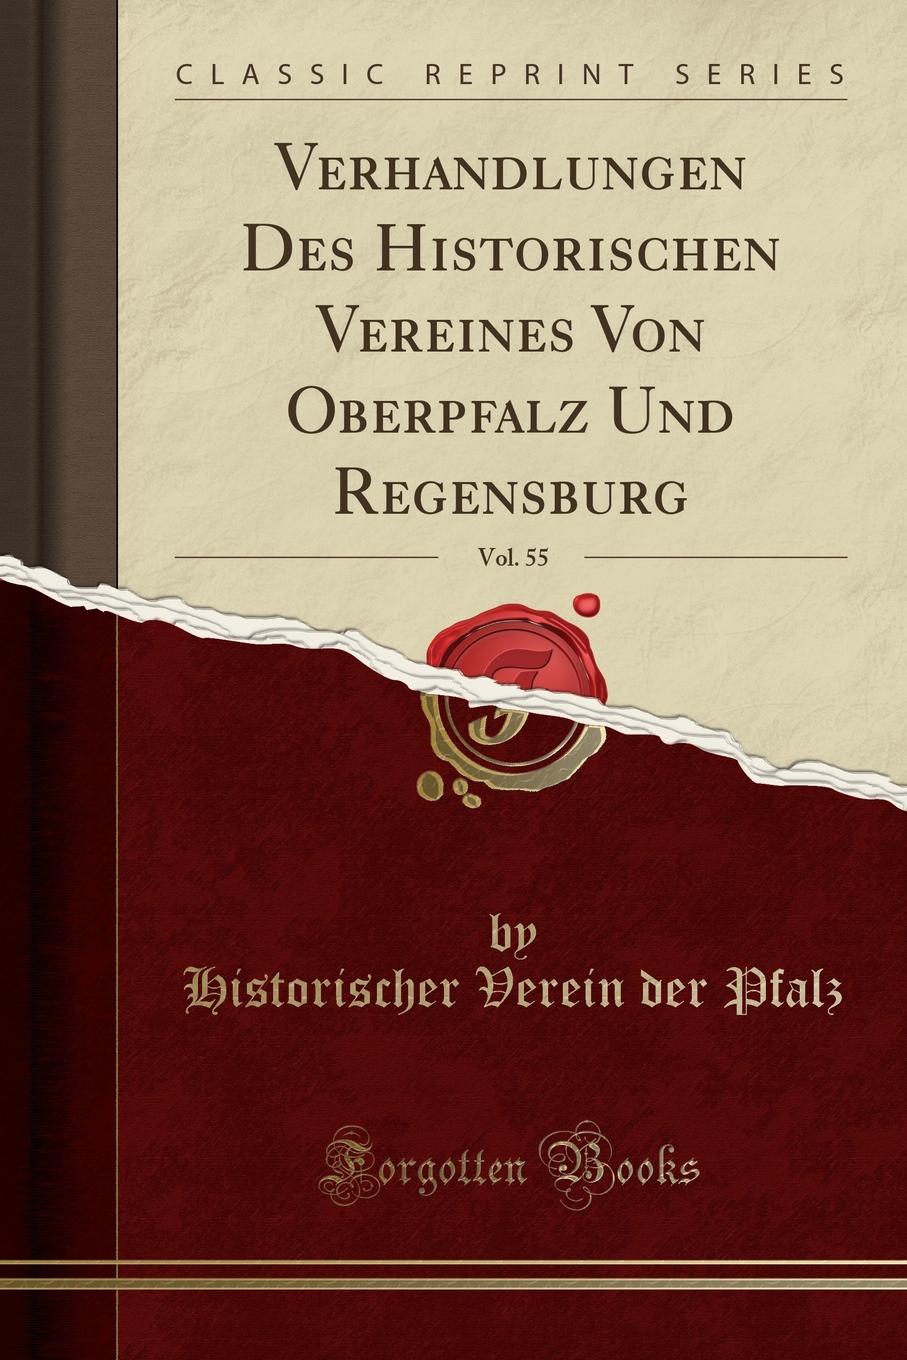 Historischer Verein der Pfalz Verhandlungen Des Historischen Vereines Von Oberpfalz Und Regensburg, Vol. 55 (Classic Reprint)